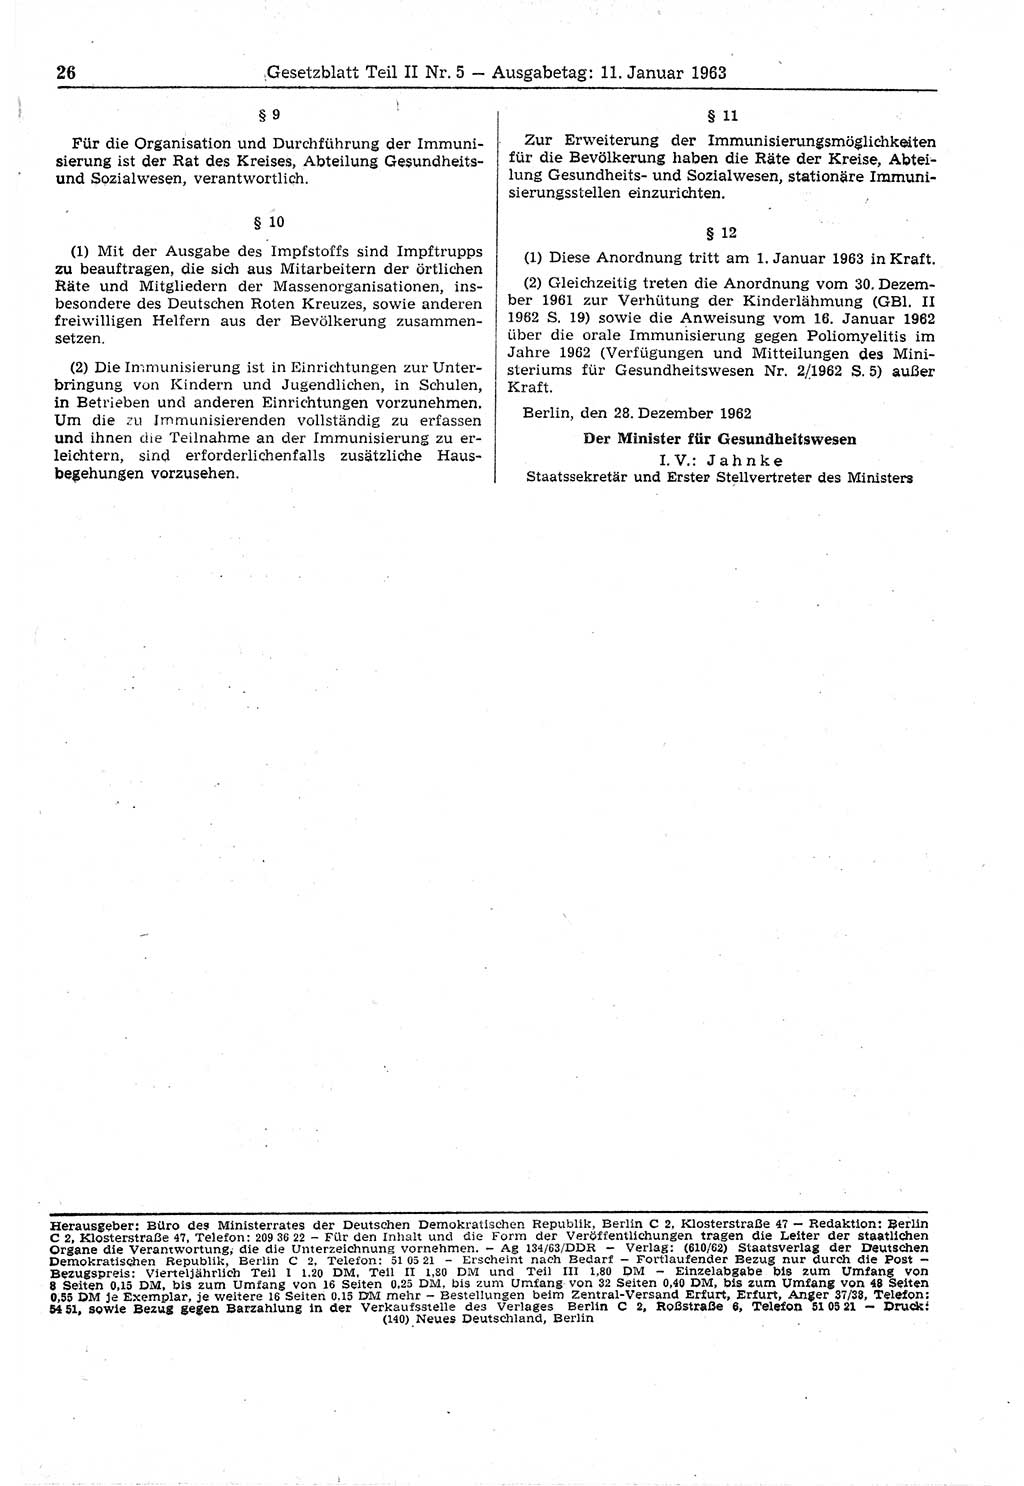 Gesetzblatt (GBl.) der Deutschen Demokratischen Republik (DDR) Teil ⅠⅠ 1963, Seite 26 (GBl. DDR ⅠⅠ 1963, S. 26)